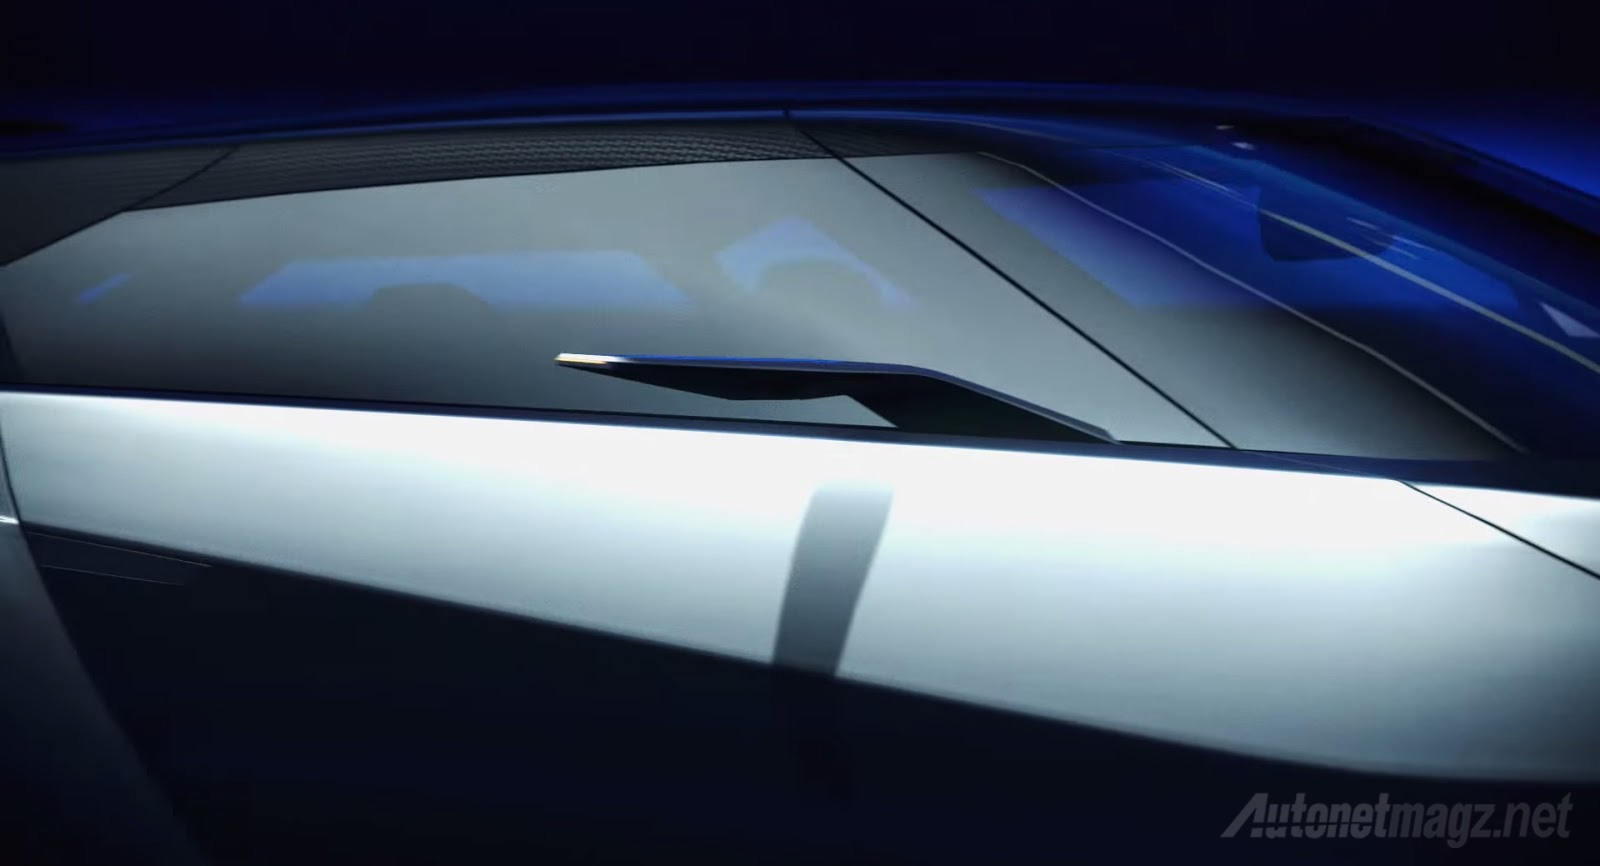 Berita, Spion-Subaru-Viziv-GT: Subaru Viziv GT Ramaikan Koleksi Gran Turismo Vision Concept